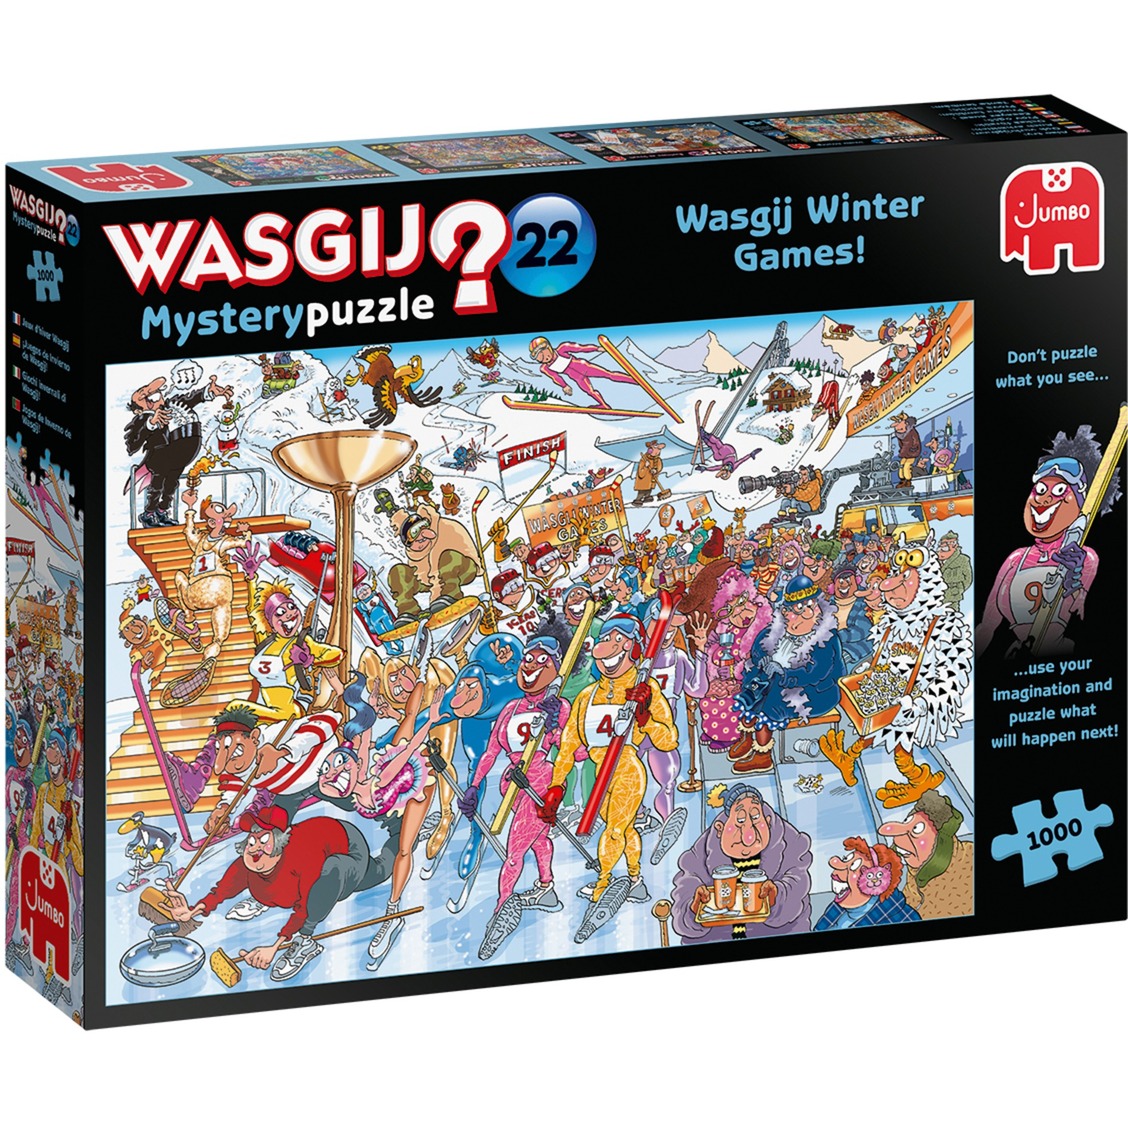 Image of Alternate - Wasgij Mystery 22 Die Wasgij Winterspiele, Puzzle online einkaufen bei Alternate